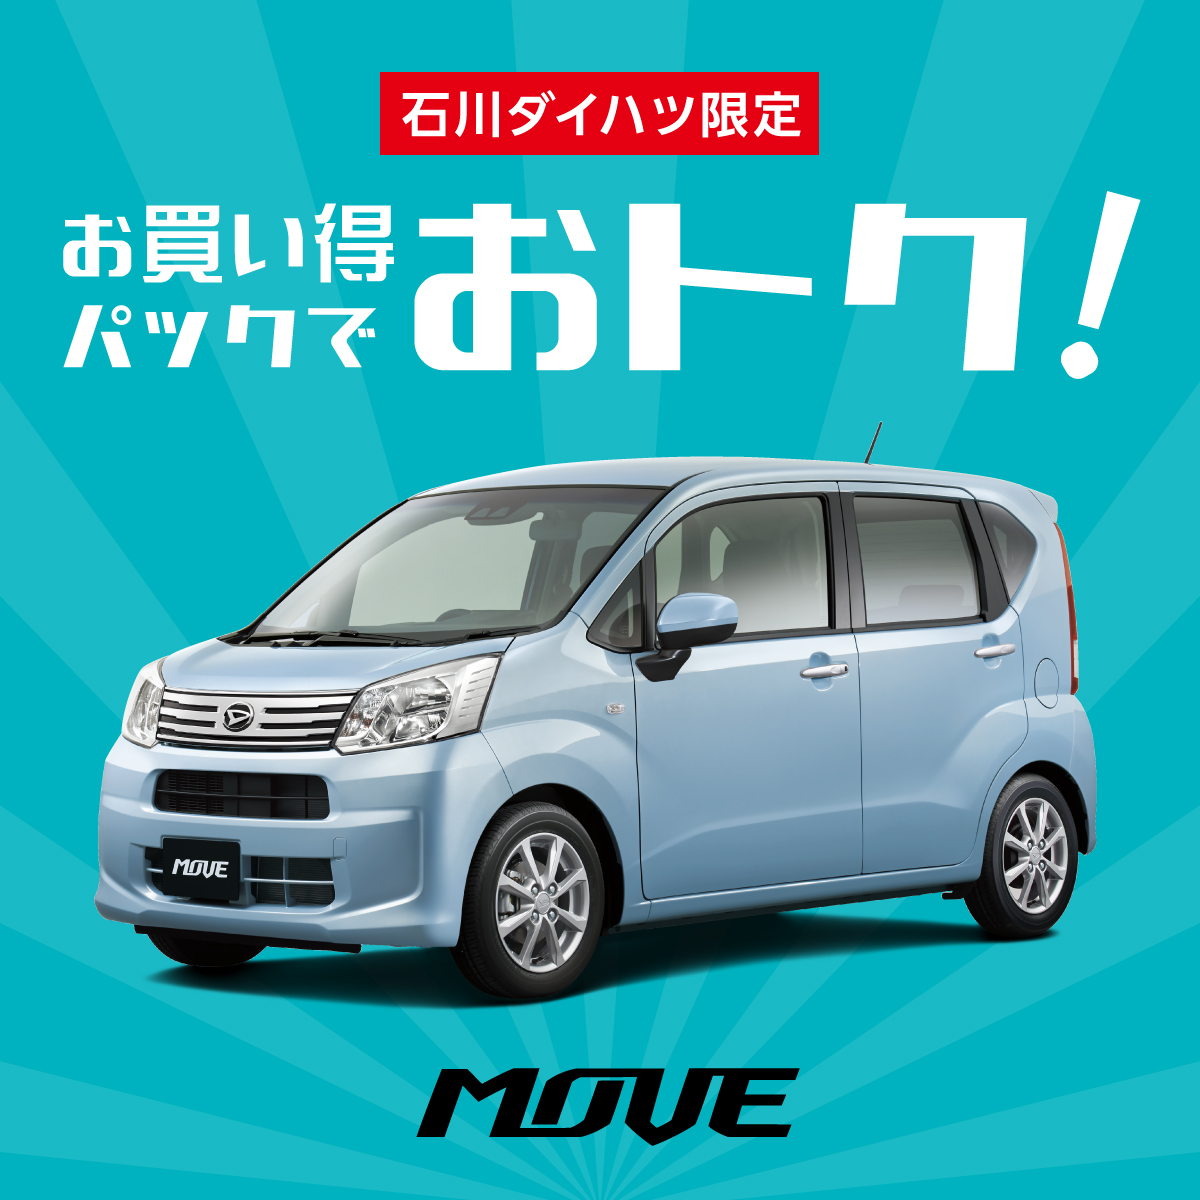 ムーヴ Move 新車 試乗車 公式 石川ダイハツ販売株式会社